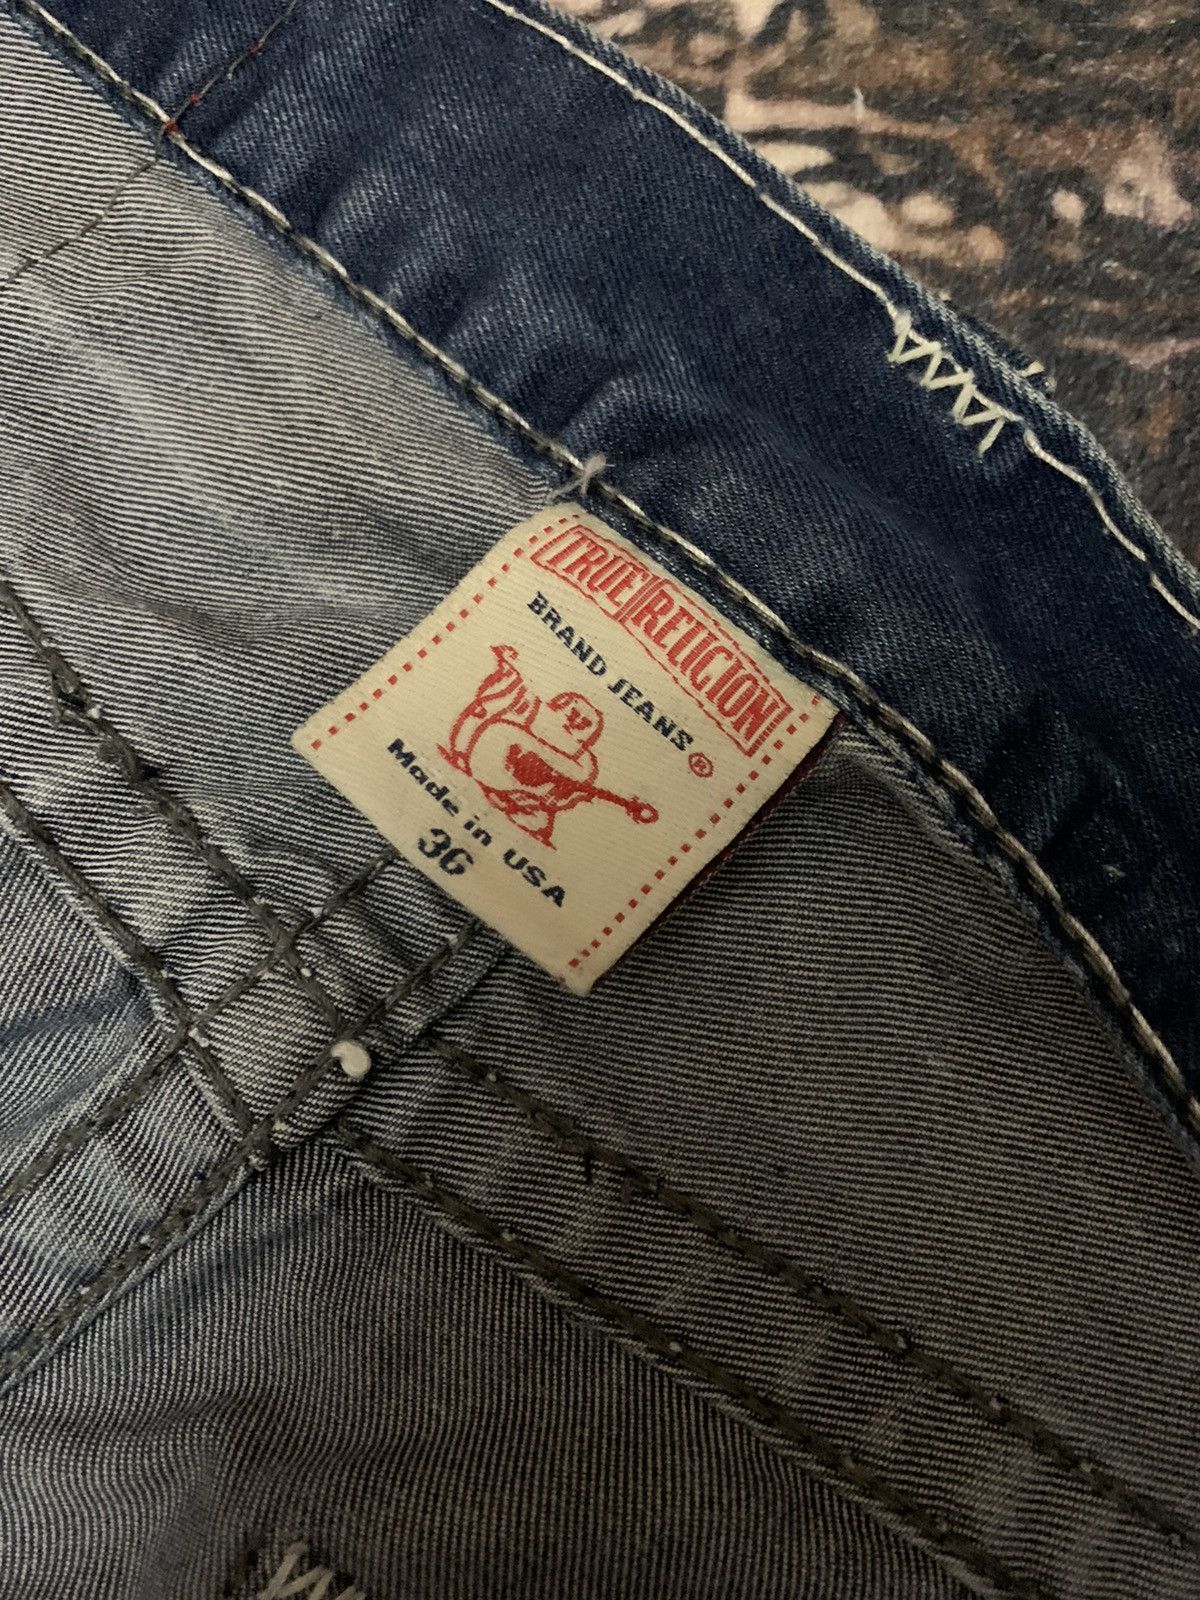 True Religion Vintage true religion baggy jeans Size US 36 / EU 52 - 9 Thumbnail